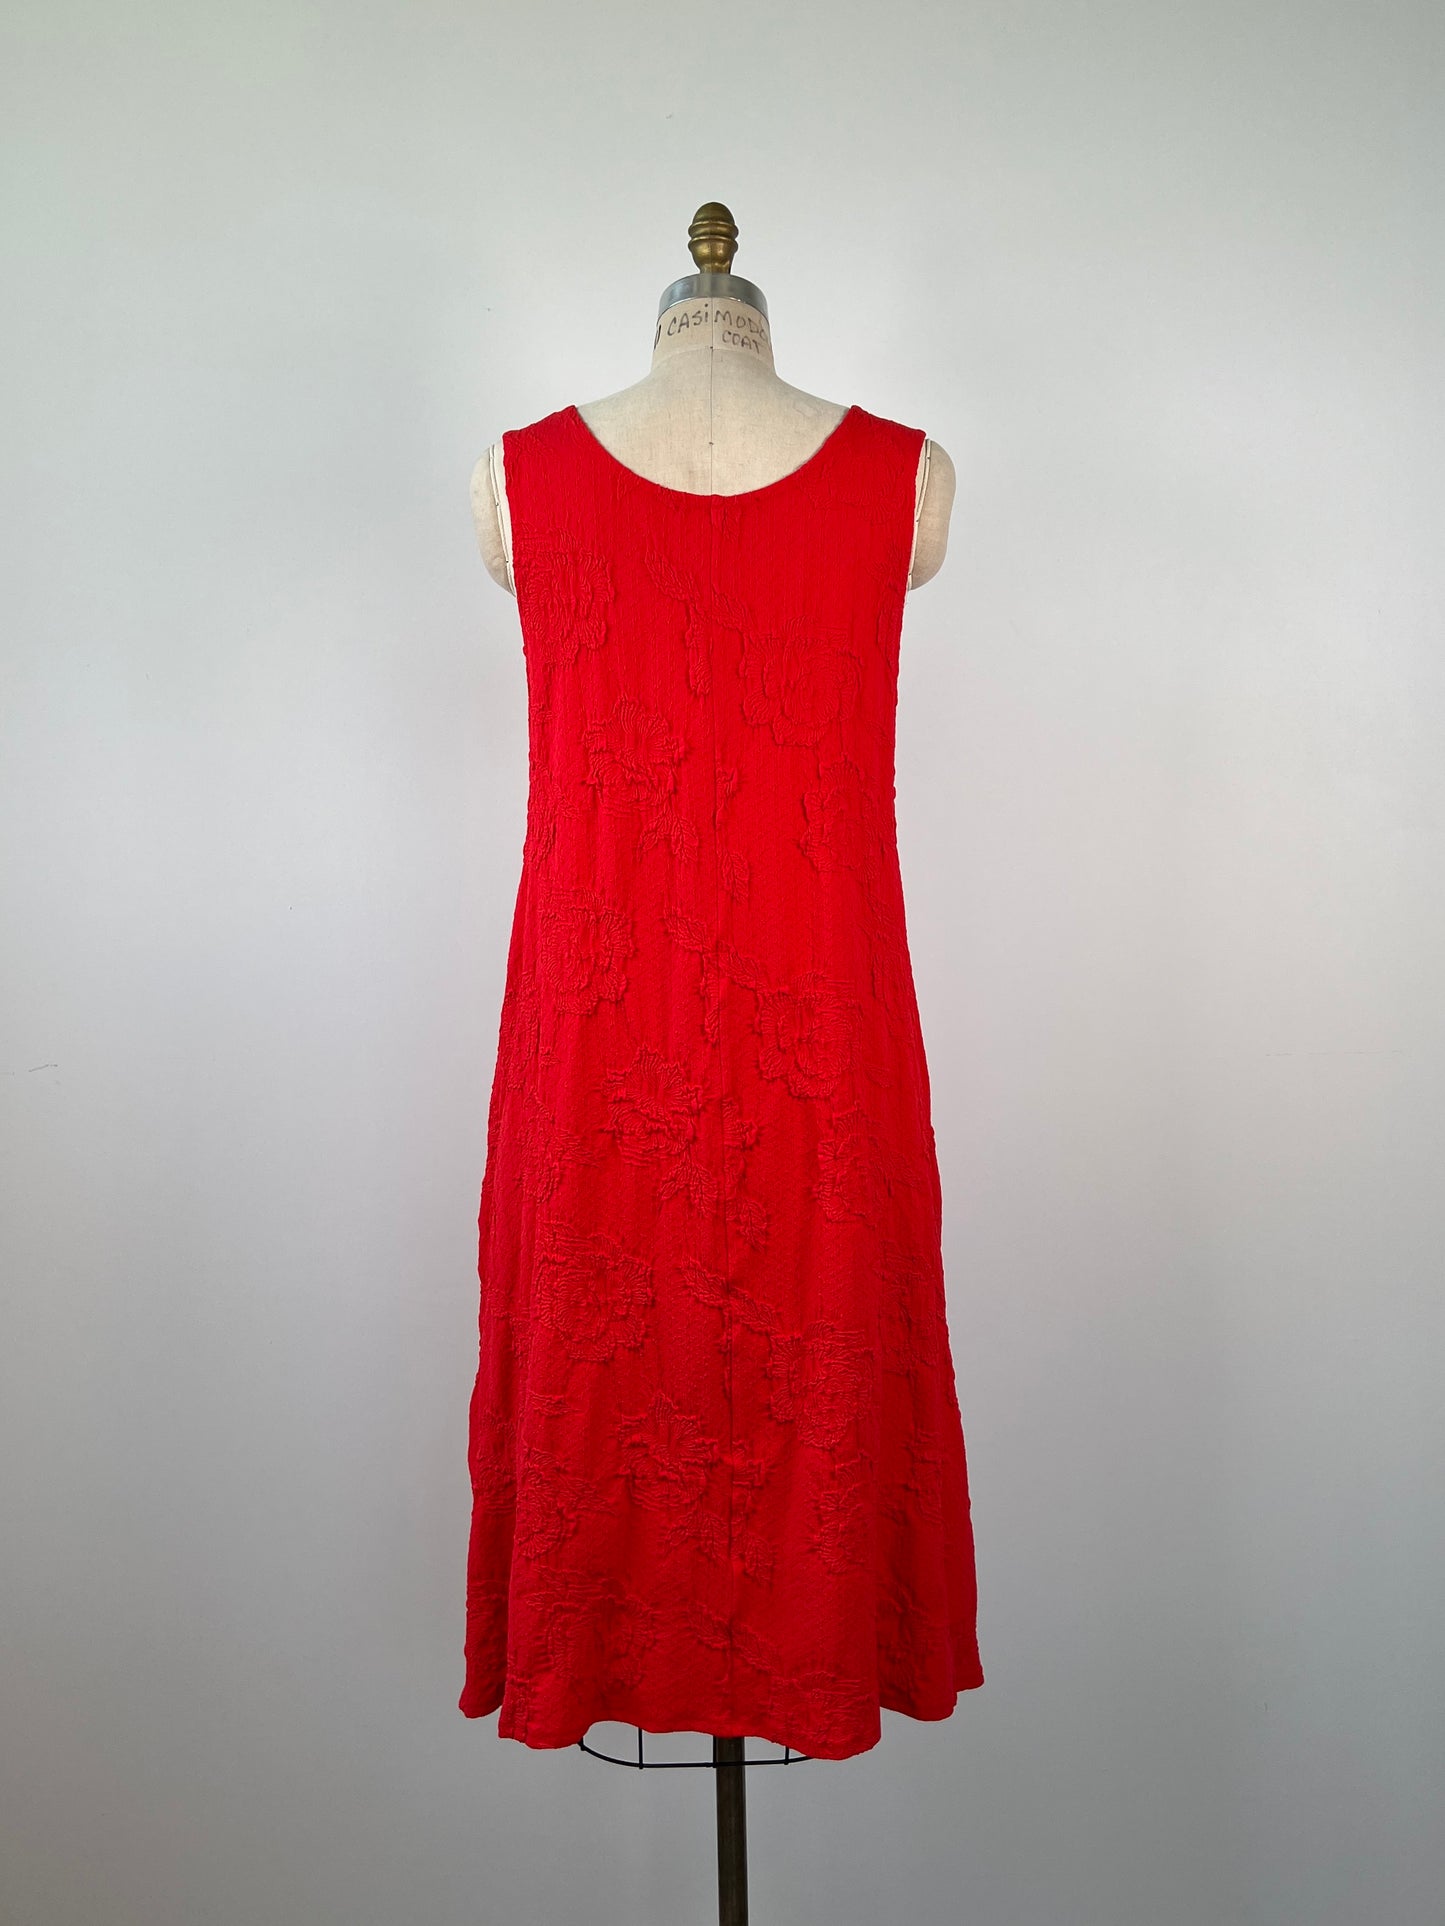 Robe rouge vif sans manches à relief floral extensible (XS/L/XL)